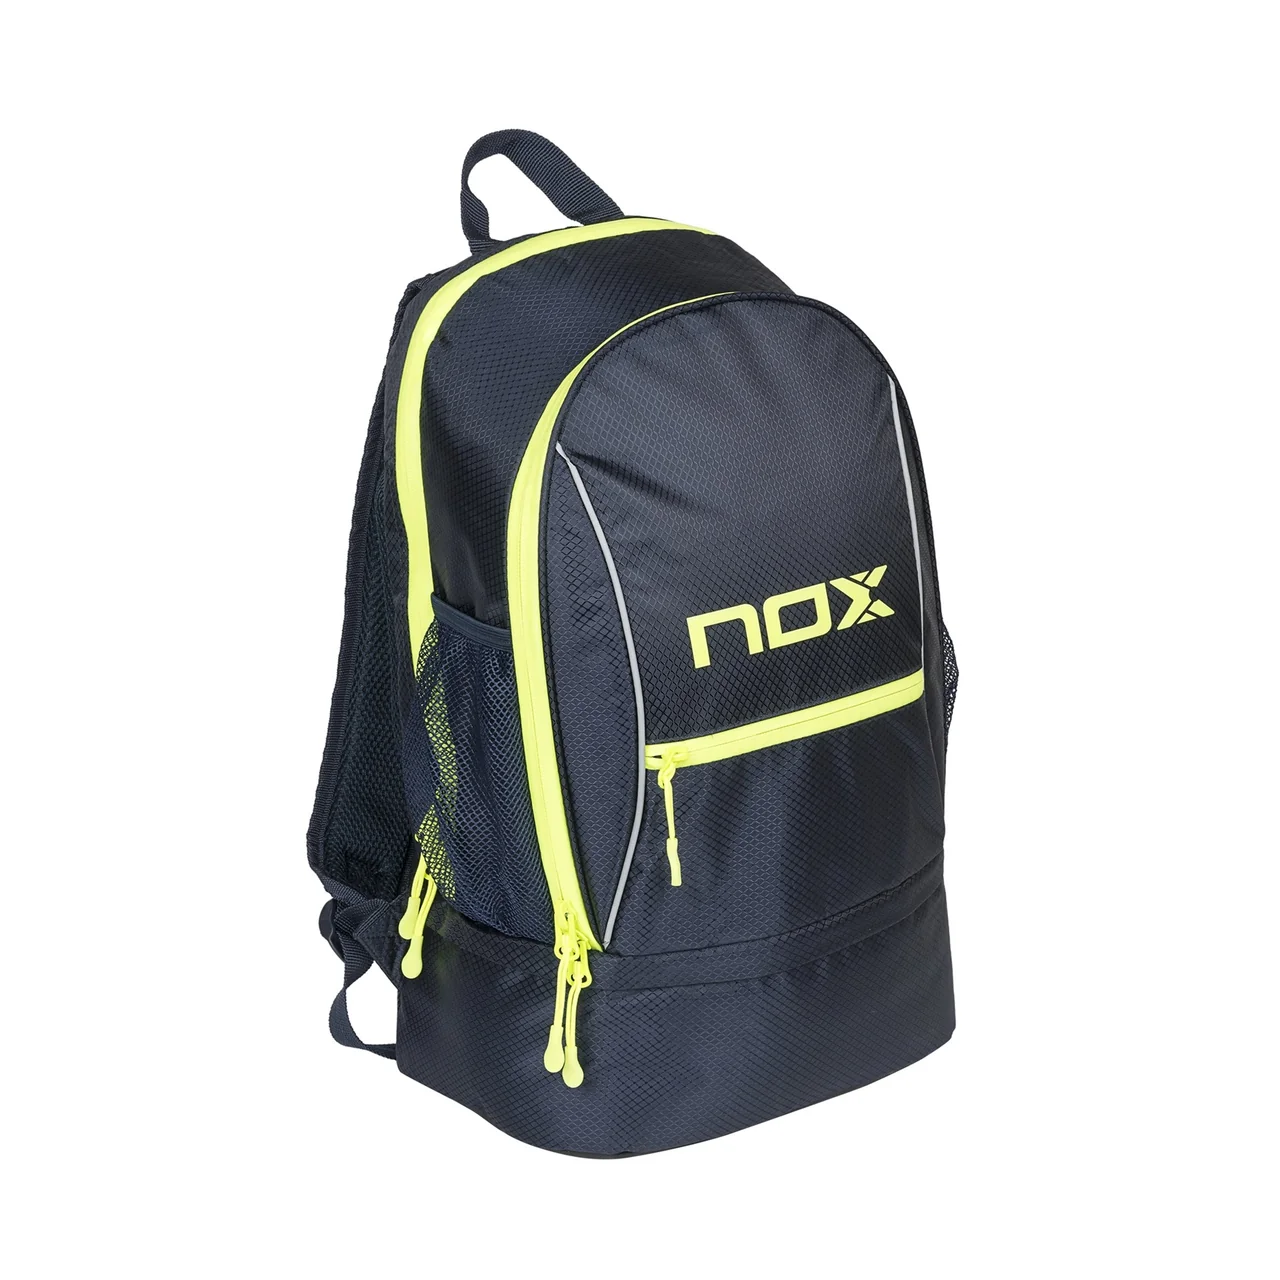 Nox Street Mochila Navy Backpack